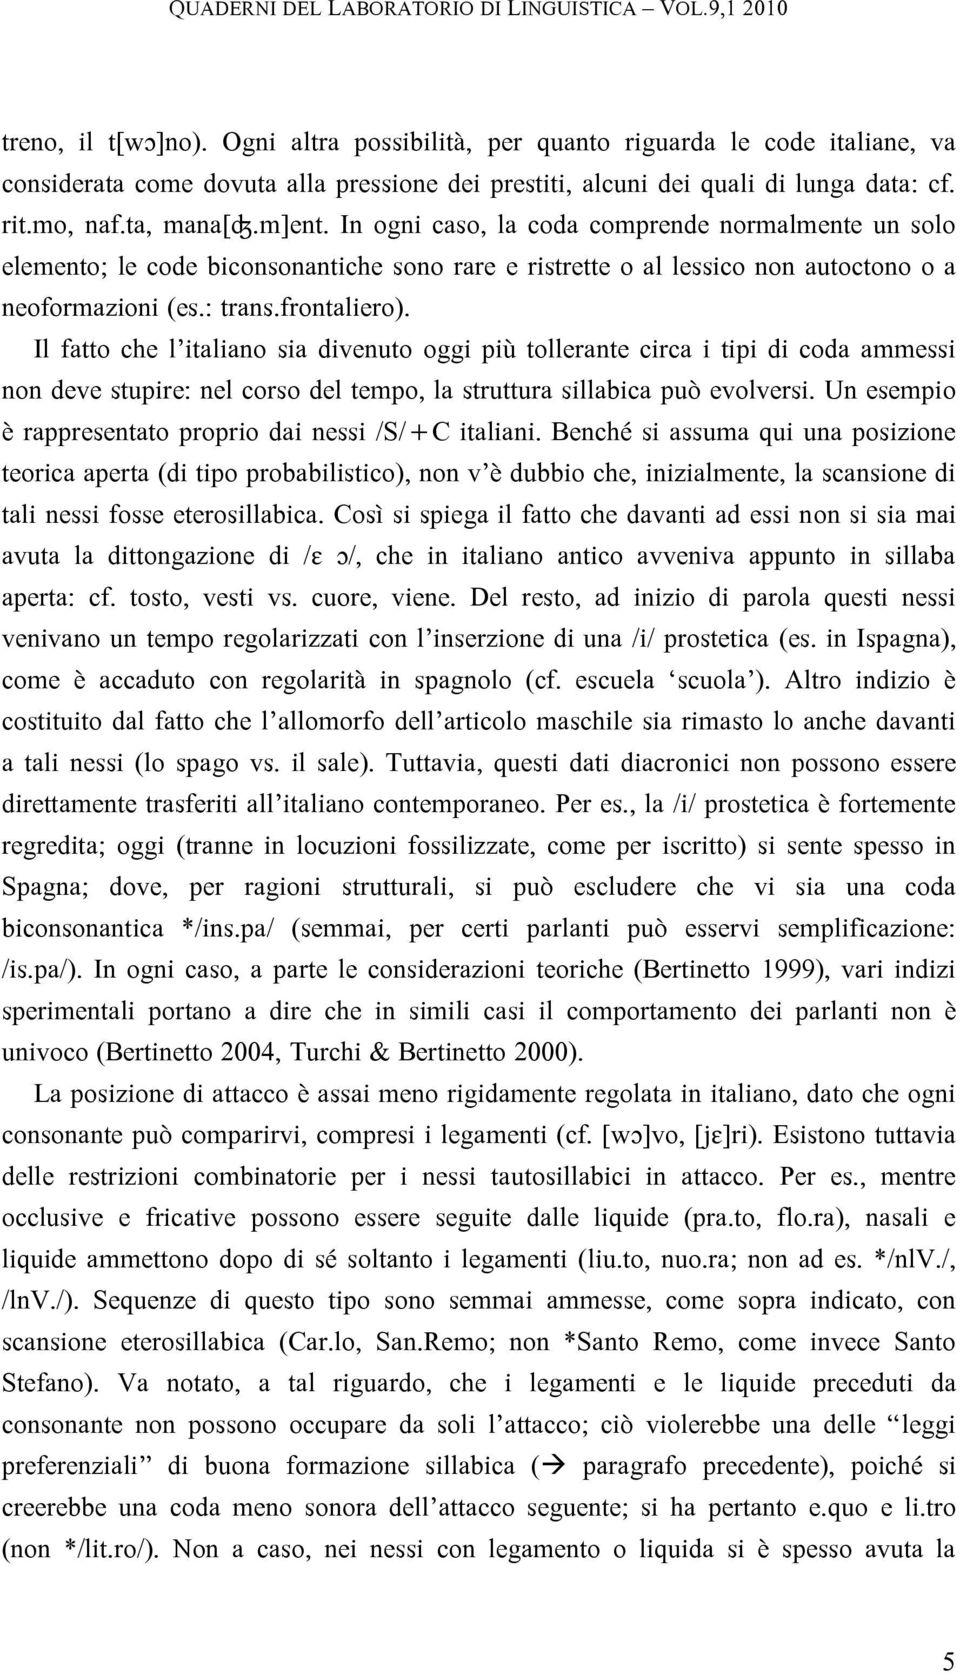 Il fatto che l italiano sia divenuto oggi più tollerante circa i tipi di coda ammessi non deve stupire: nel corso del tempo, la struttura sillabica può evolversi.